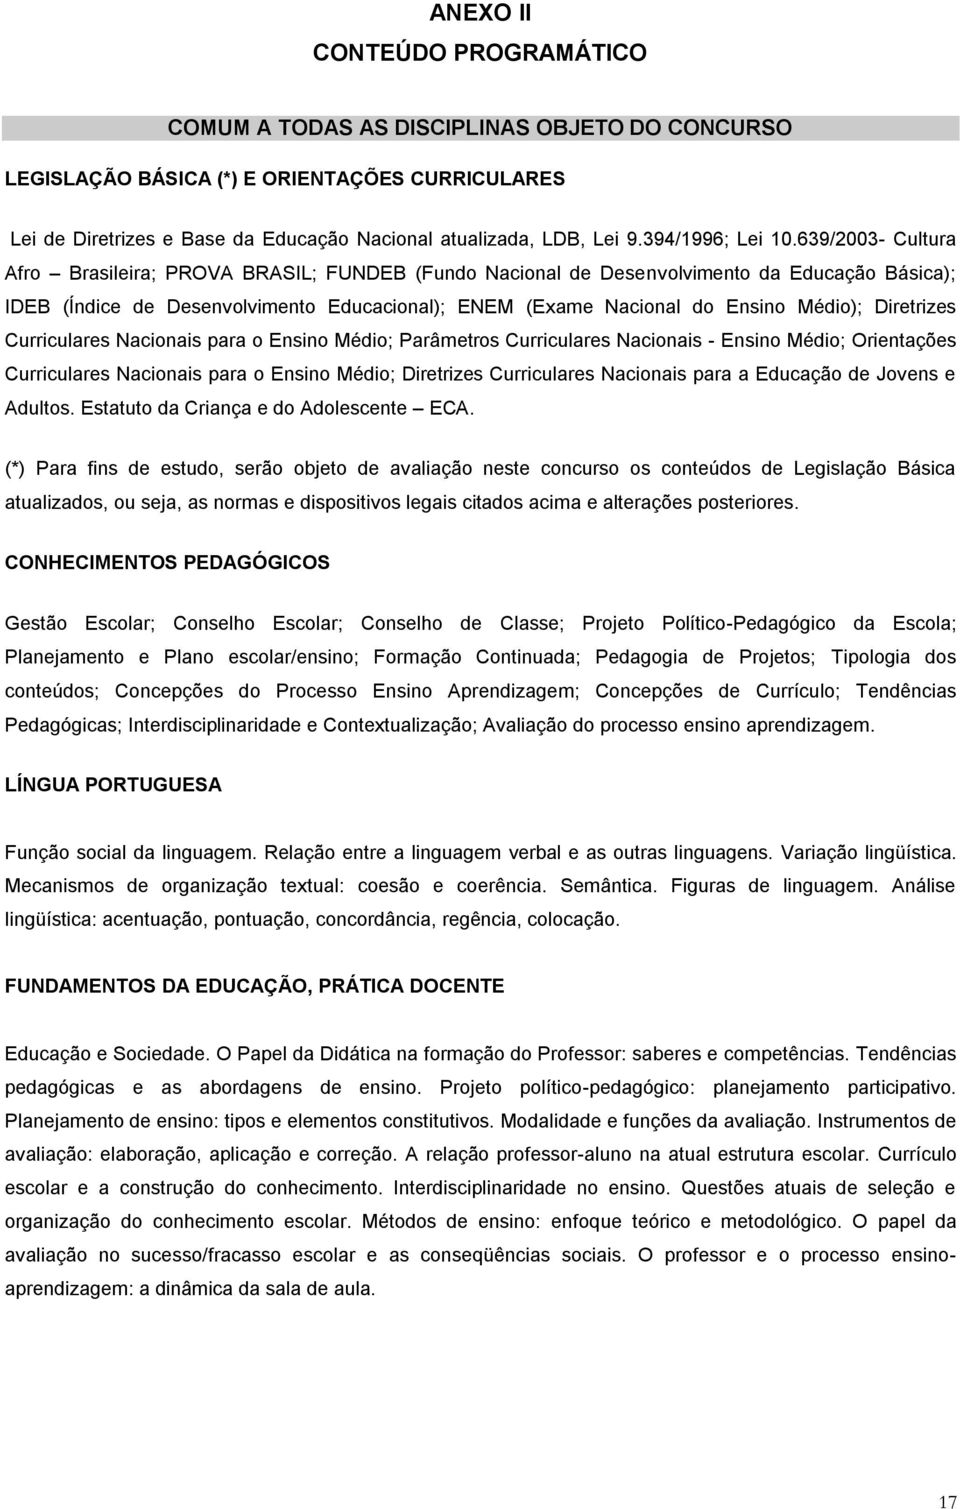 639/2003- Cultura Afro Brasileira; PROVA BRASIL; FUNDEB (Fundo Nacional de Desenvolvimento da Educação Básica); IDEB (Índice de Desenvolvimento Educacional); ENEM (Exame Nacional do Ensino Médio);